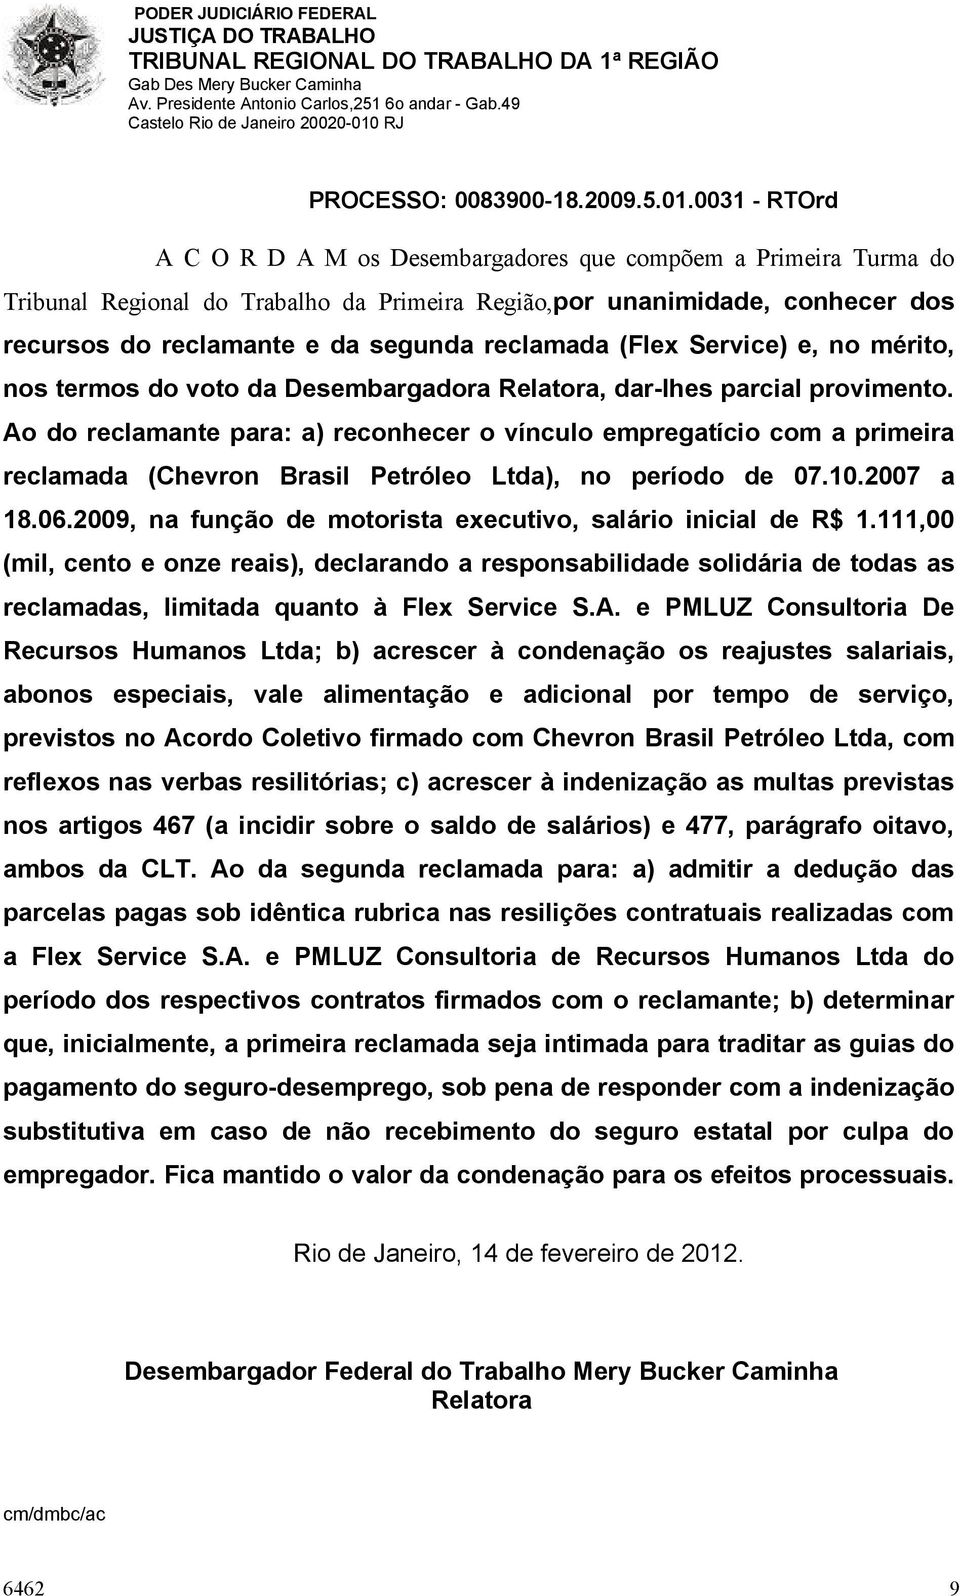 Ao do reclamante para: a) reconhecer o vínculo empregatício com a primeira reclamada (Chevron Brasil Petróleo Ltda), no período de 07.10.2007 a 18.06.